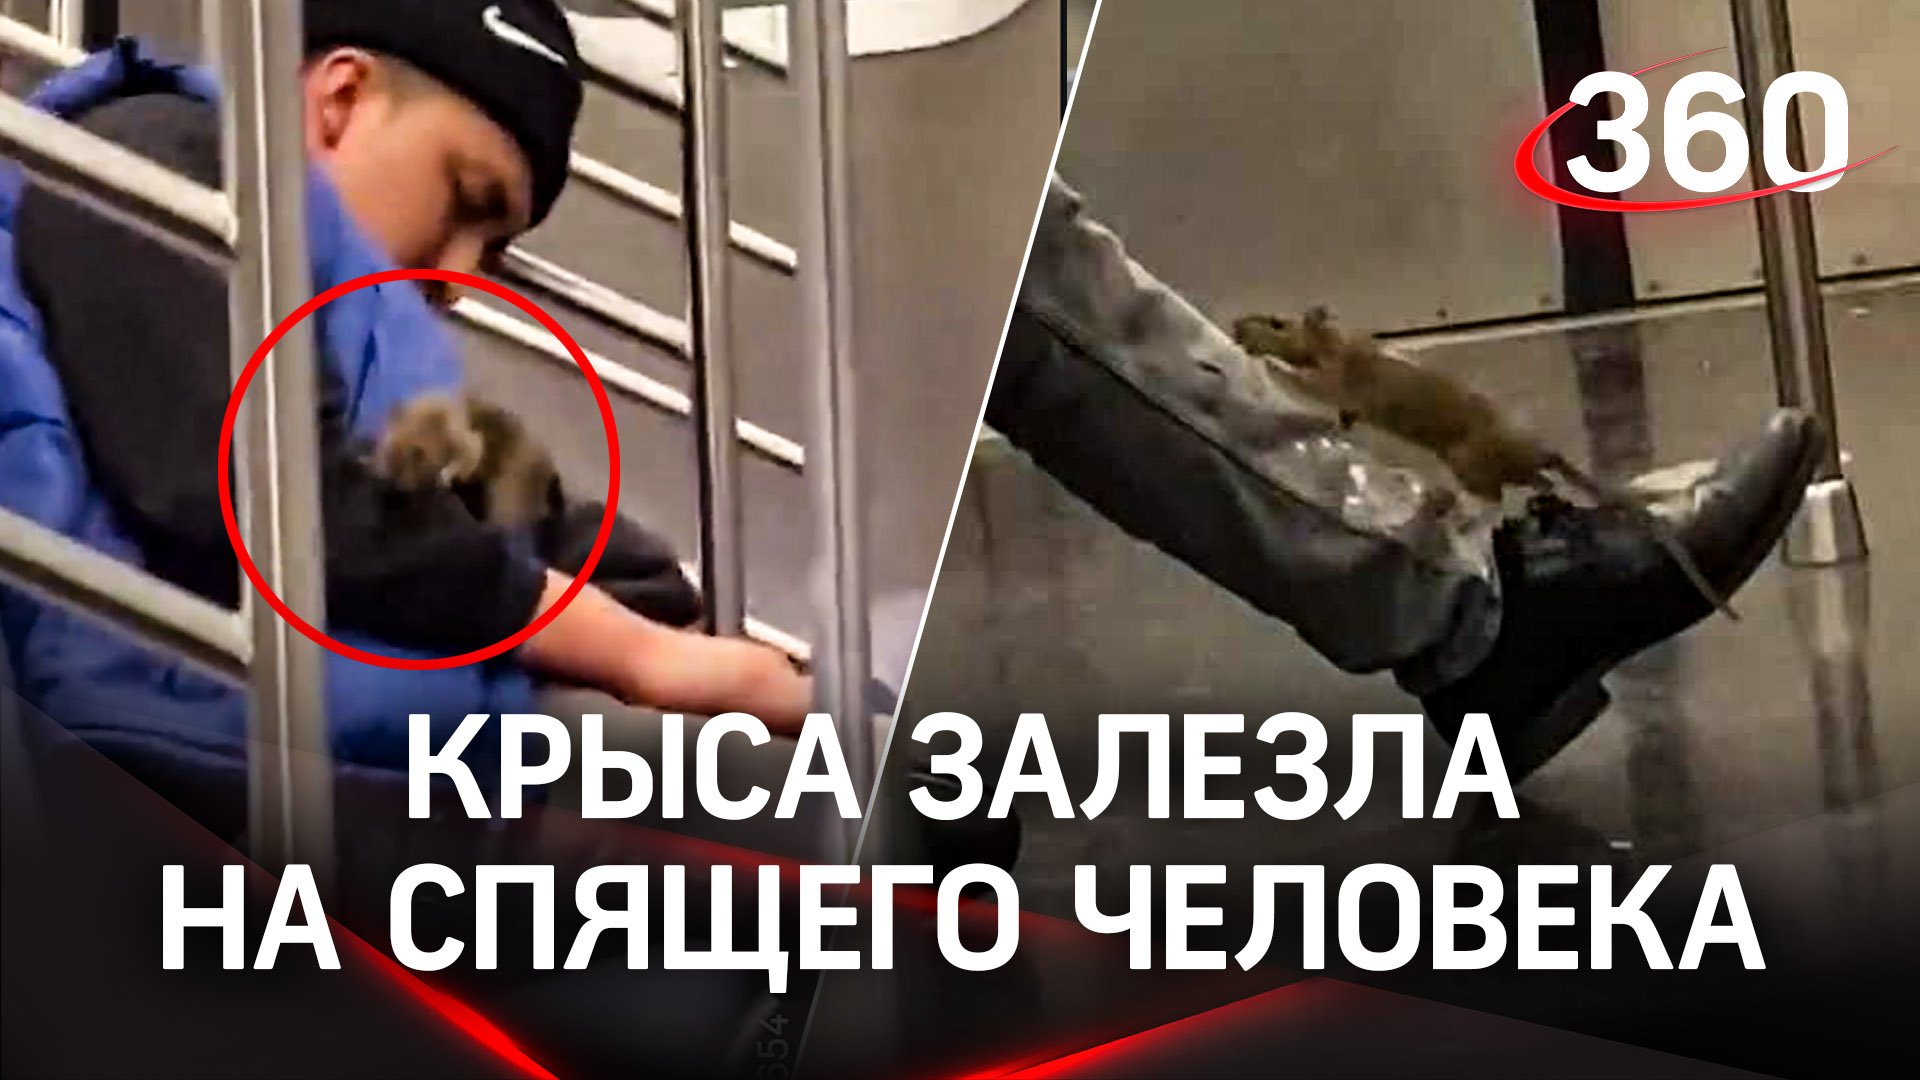 Метро. Сон. Человек и крыса : в метро Нью-Йорка крысы бегают по людям